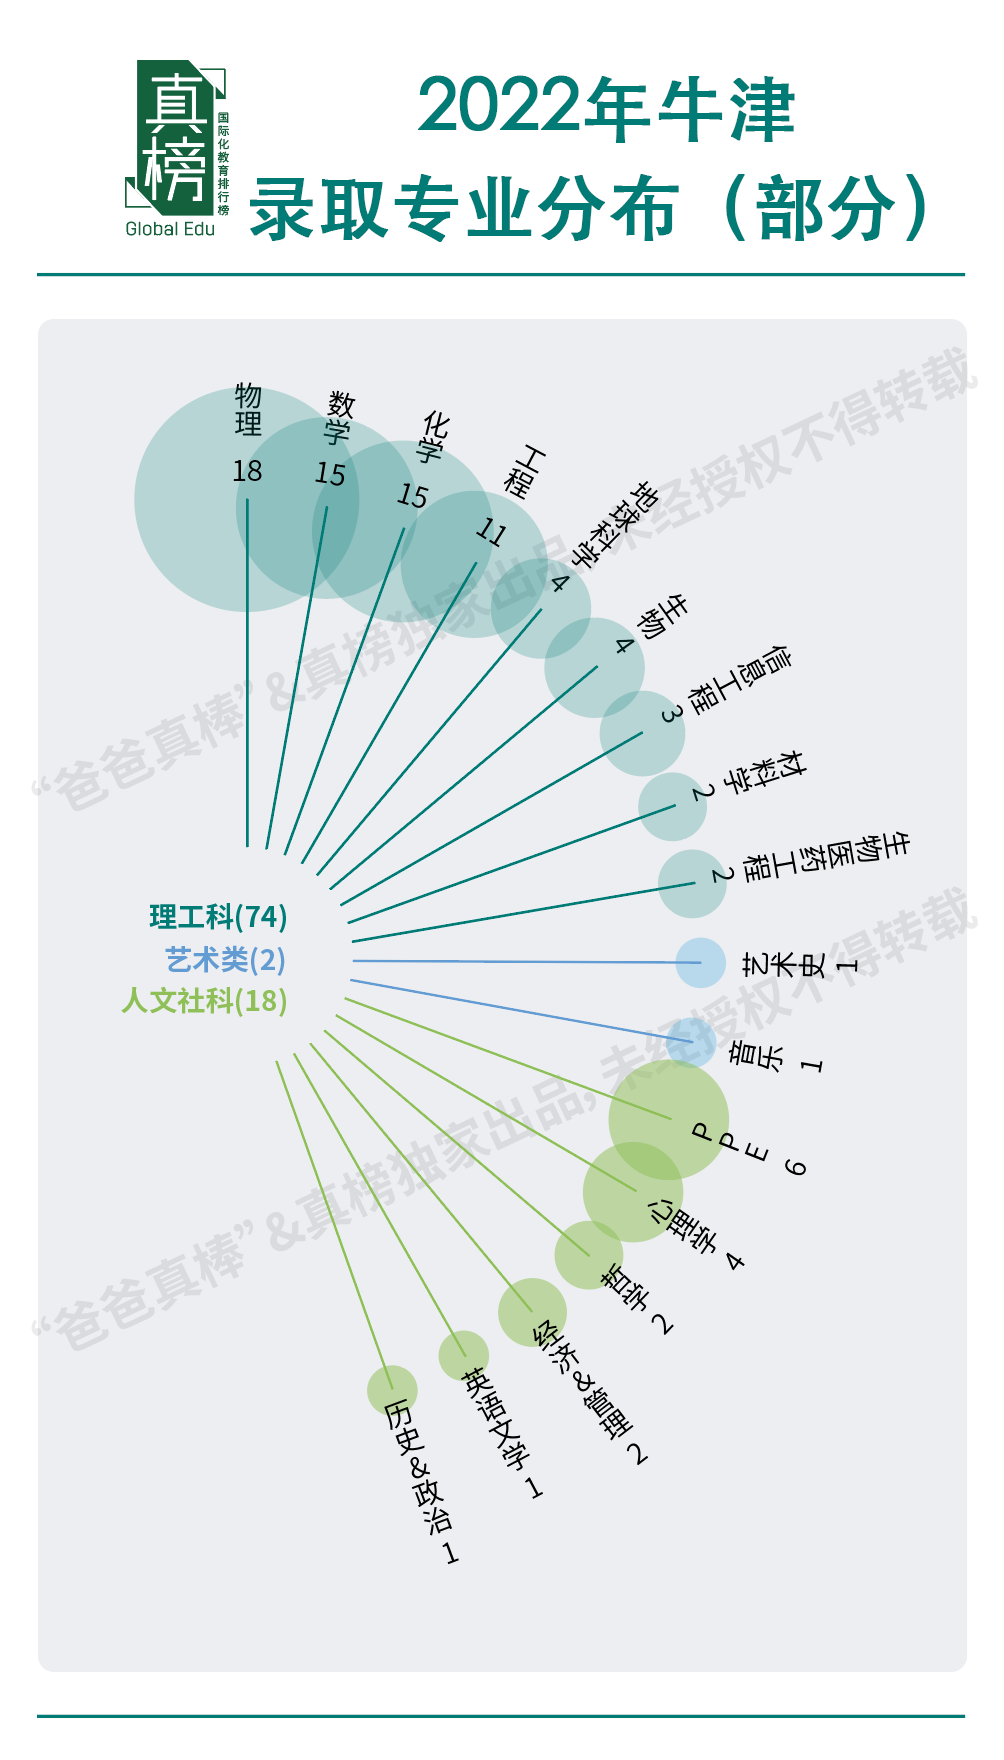 2022牛津Offer，中国地区收到163封。牛津在中国选材偏爱理工男  数据 英国留学 牛津大学 第8张